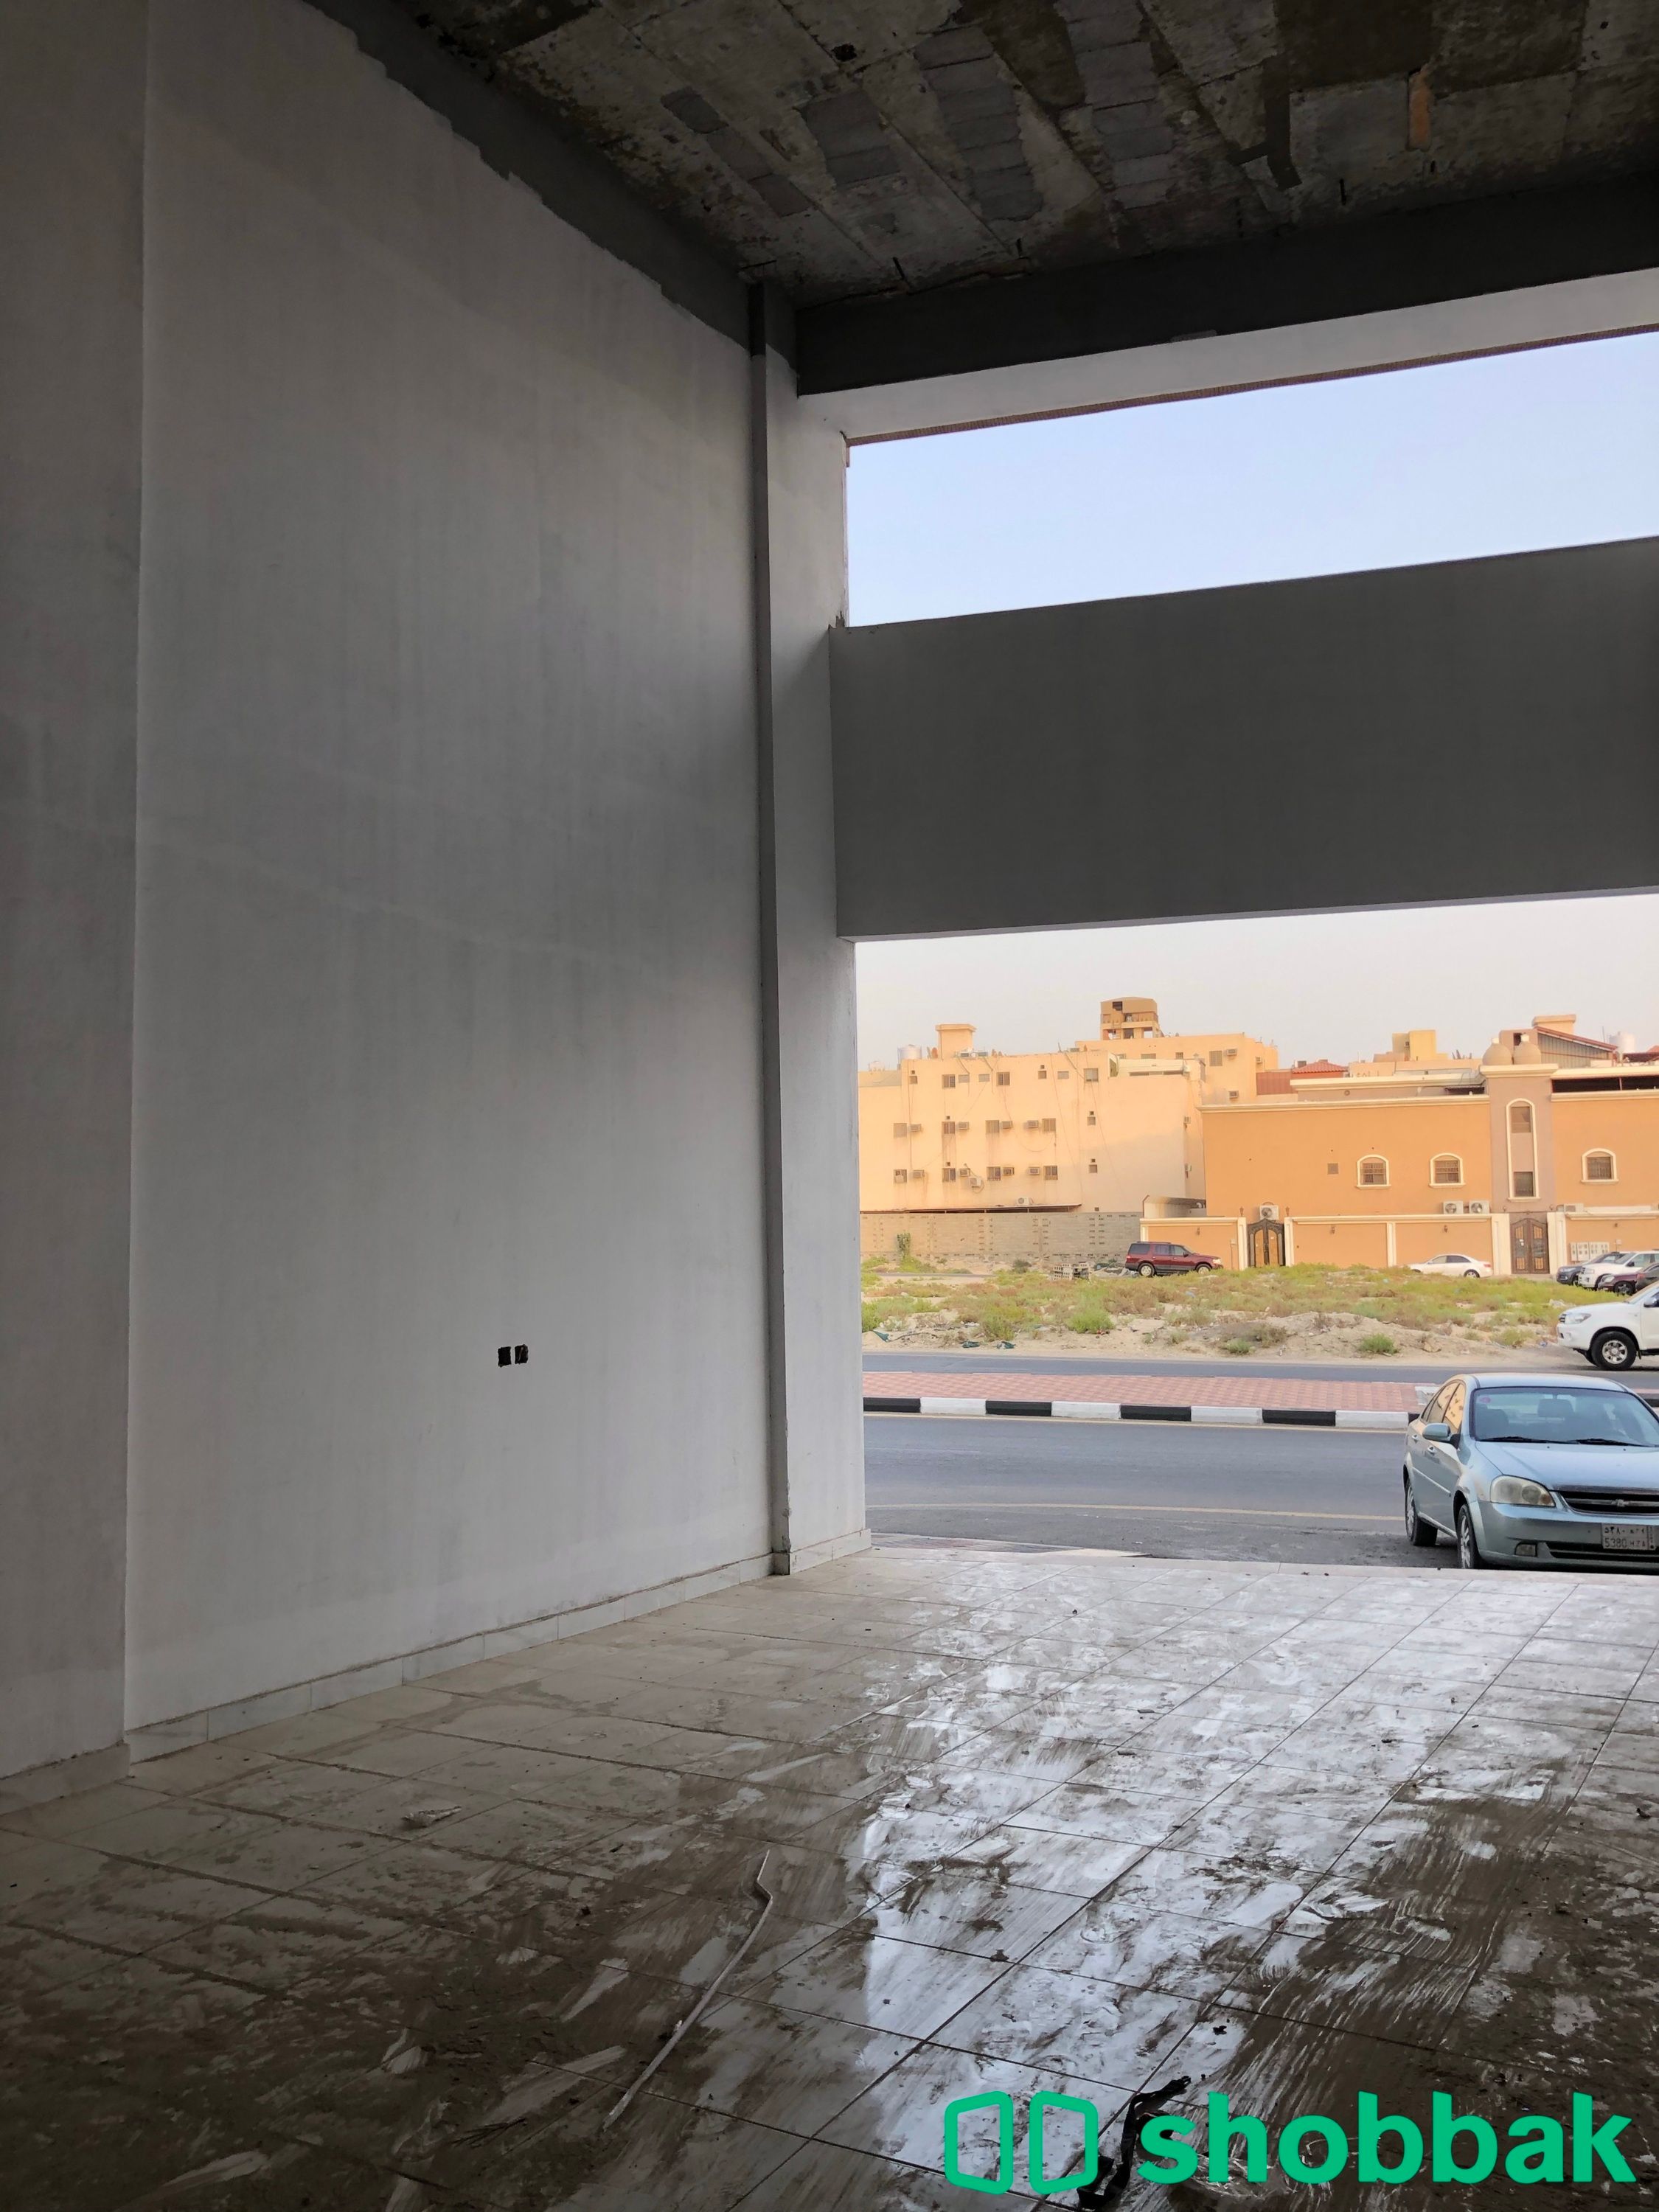 محل رقم 1 للإيجار - حي الفيحاء الدمام  Shobbak Saudi Arabia